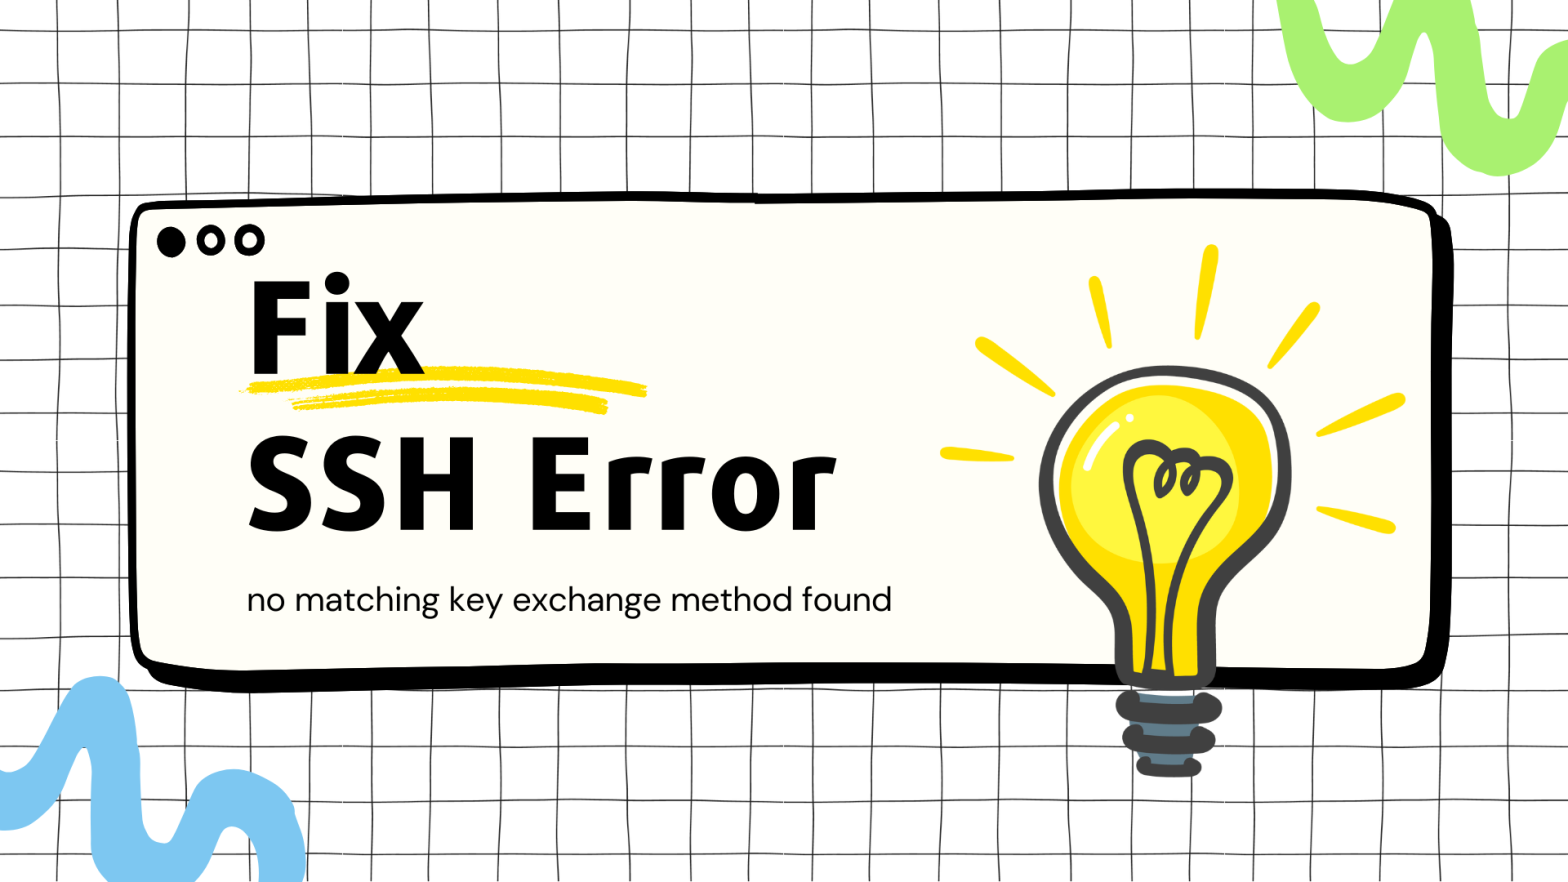 Fix SSH Error: no matching key exchange method found